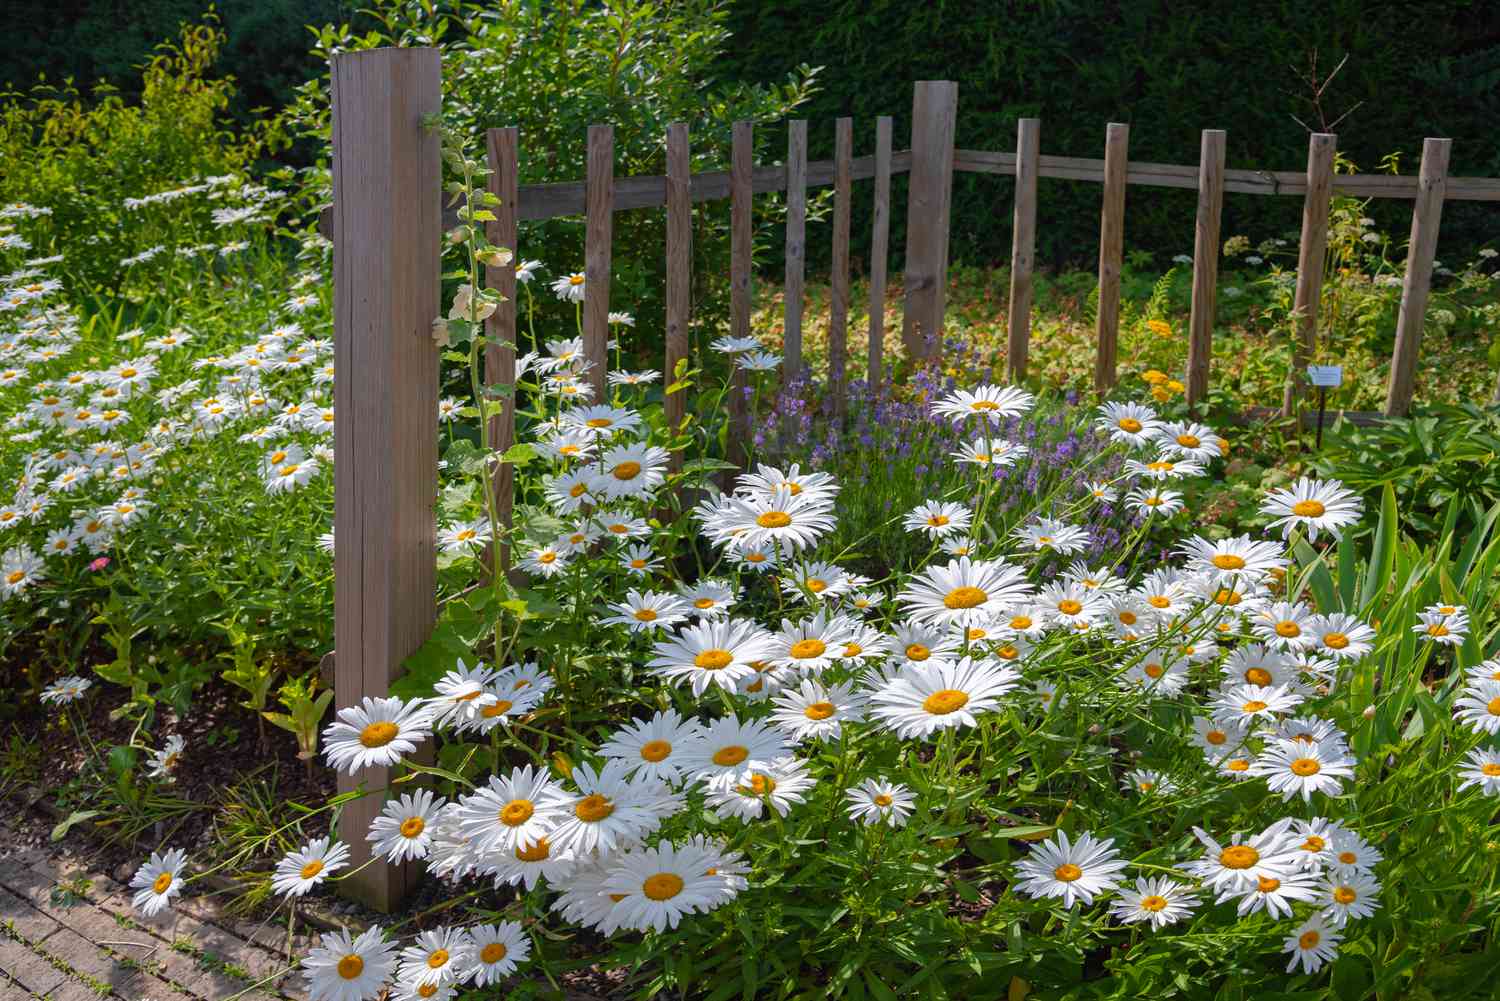 Gänseblümchen mit weißen strahlenden Blütenblättern an einem Holzzaun